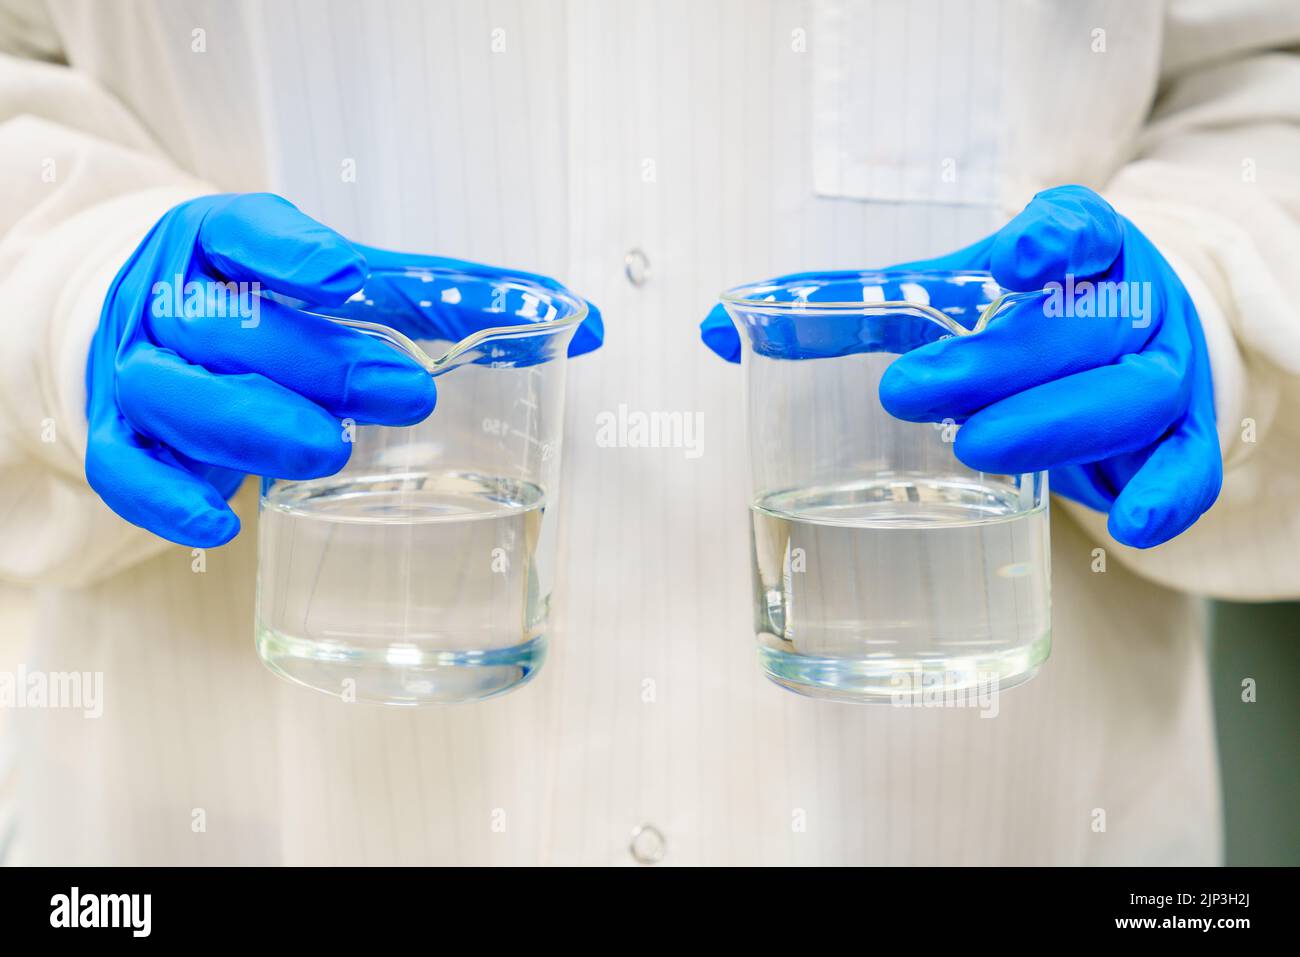 Une personne dans une blouse de laboratoire tient deux béchers avec des liquides transparents Banque D'Images